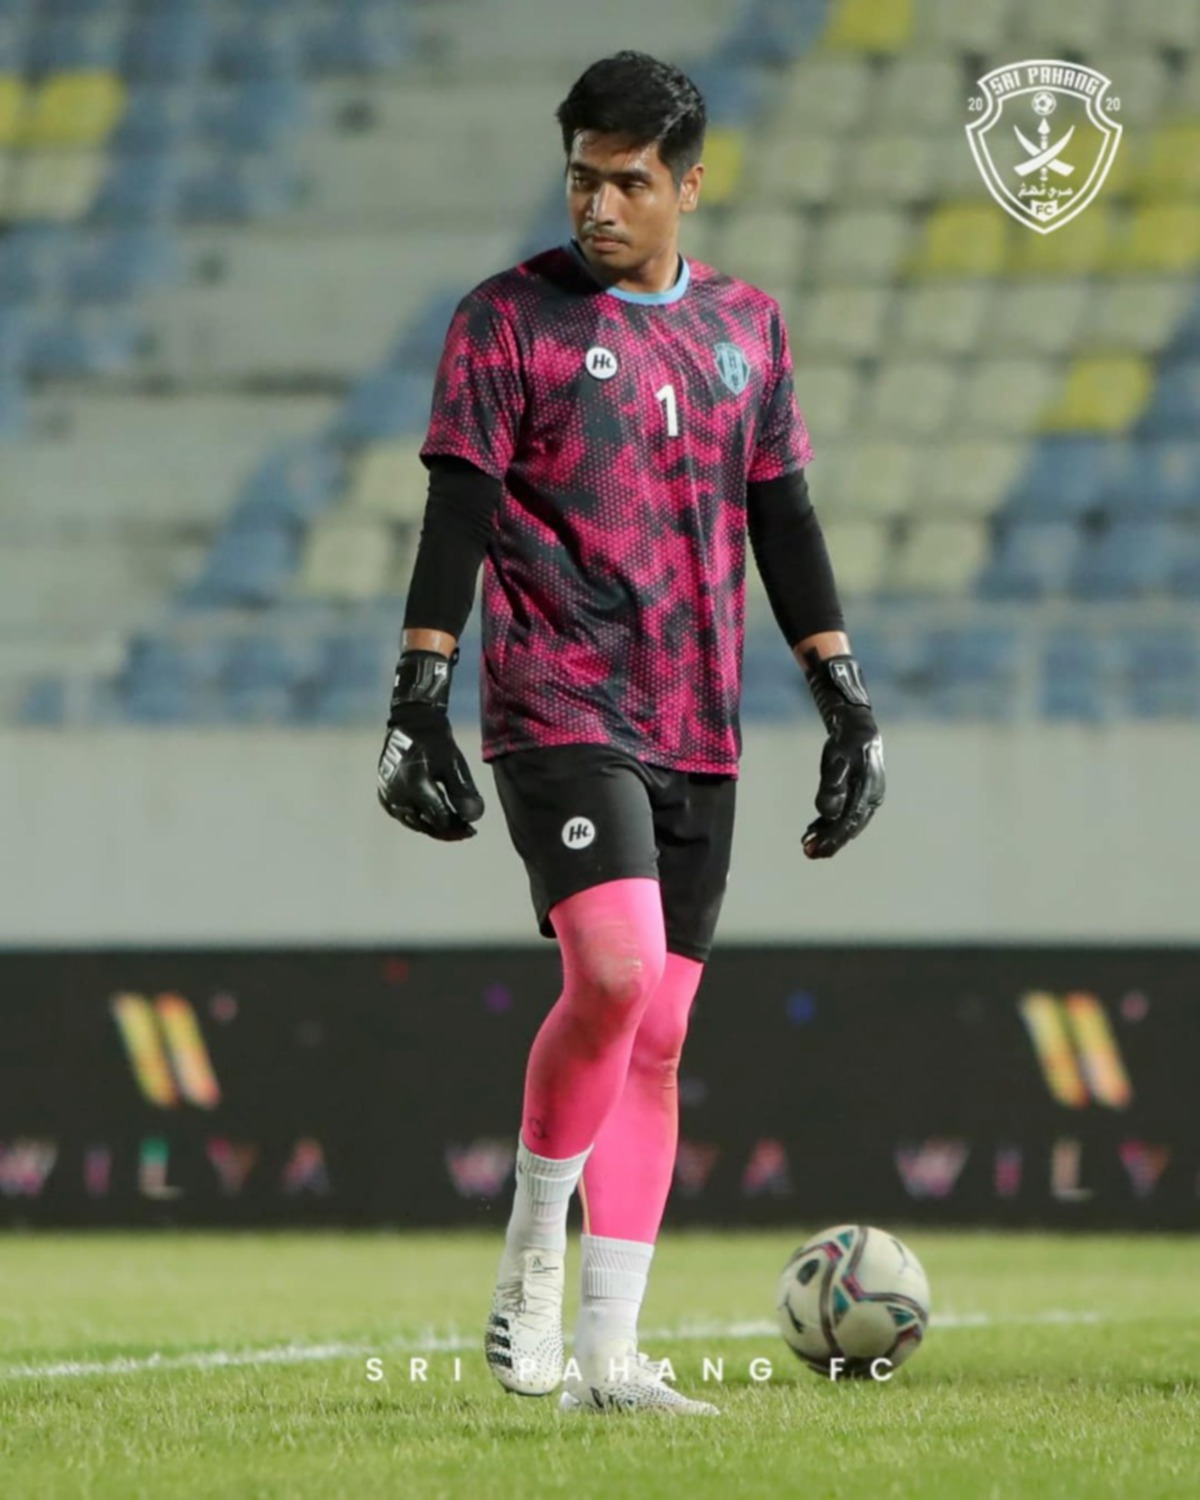 Penjaga gol Sri Pahang FC, Zarif Irfan Hashimuddin